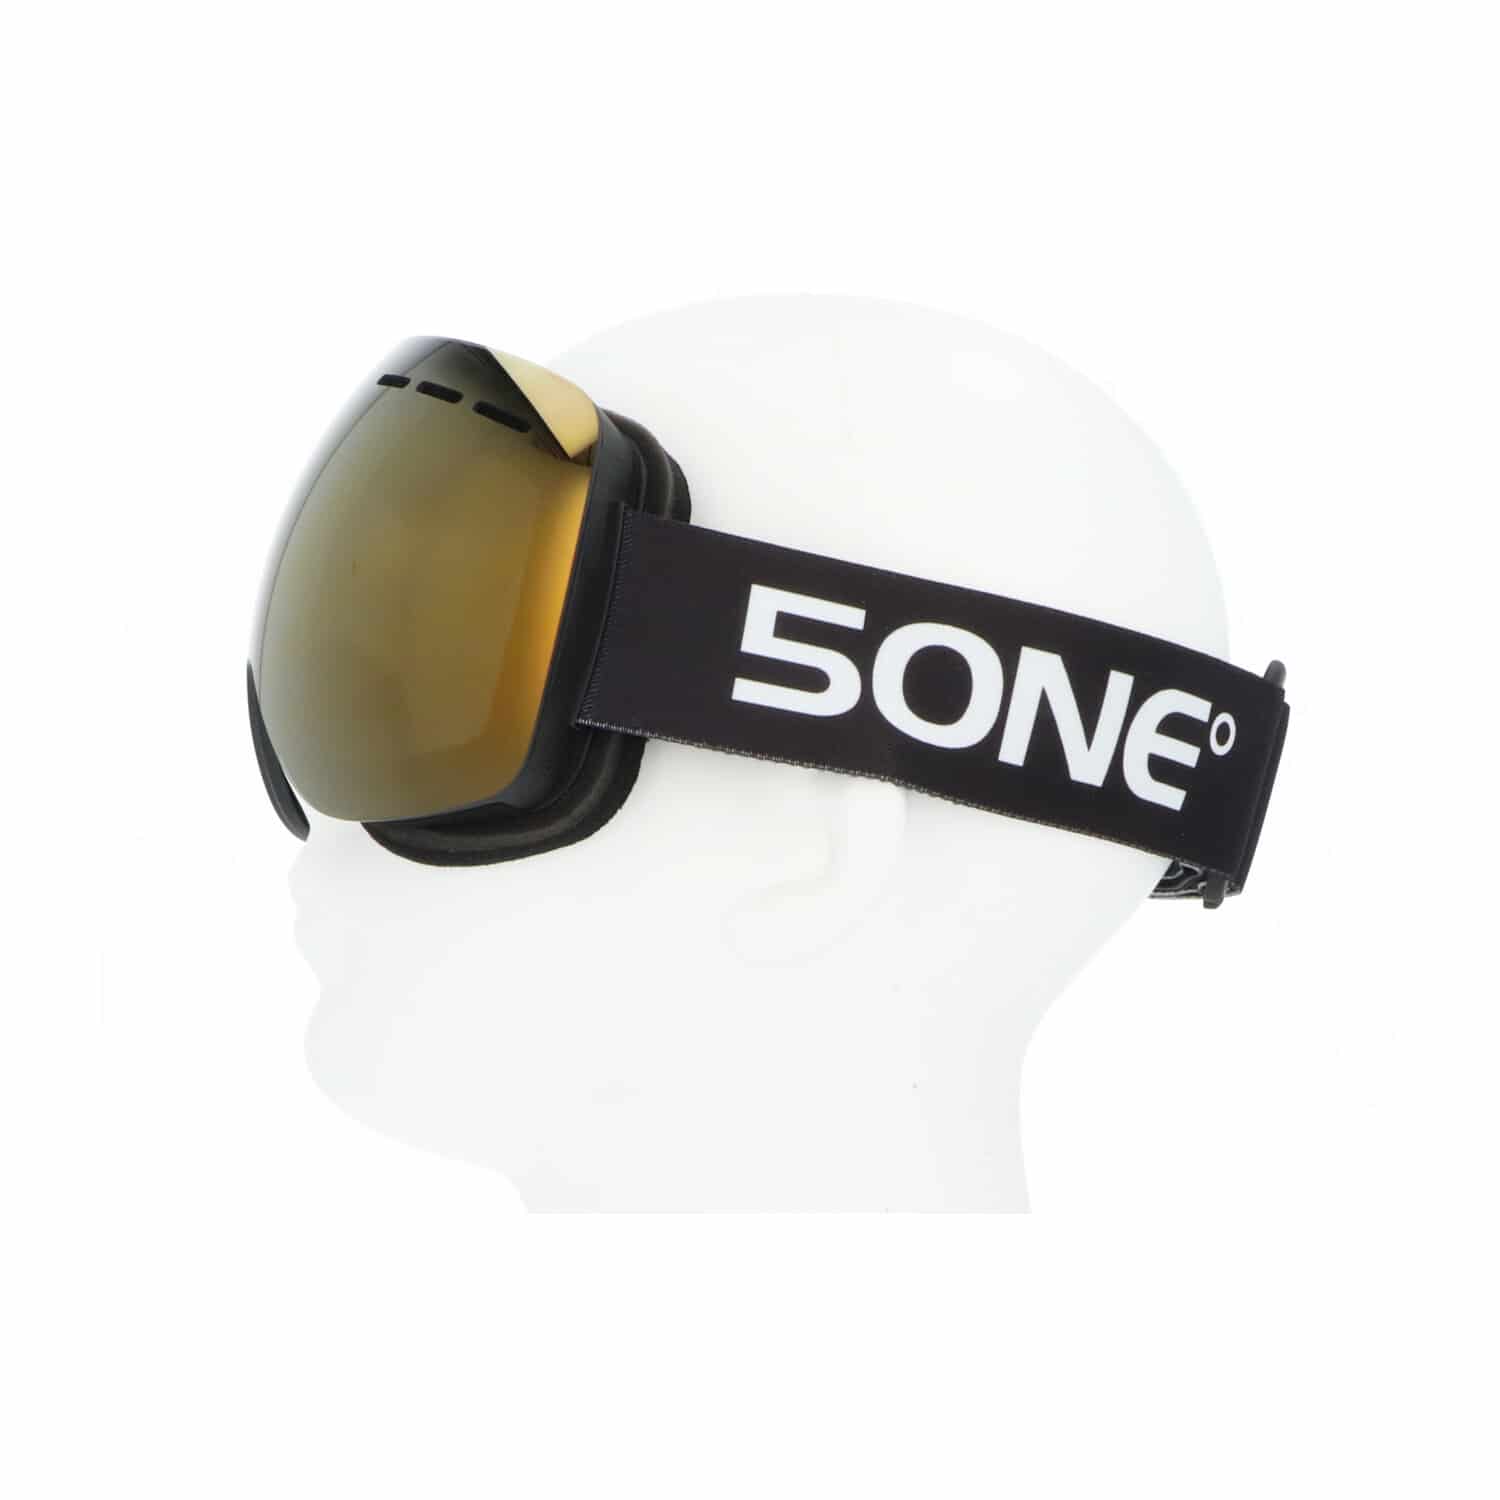 5one® Alpine 1 Bronze anti-condens Skibril met hardcase - Zwart frame